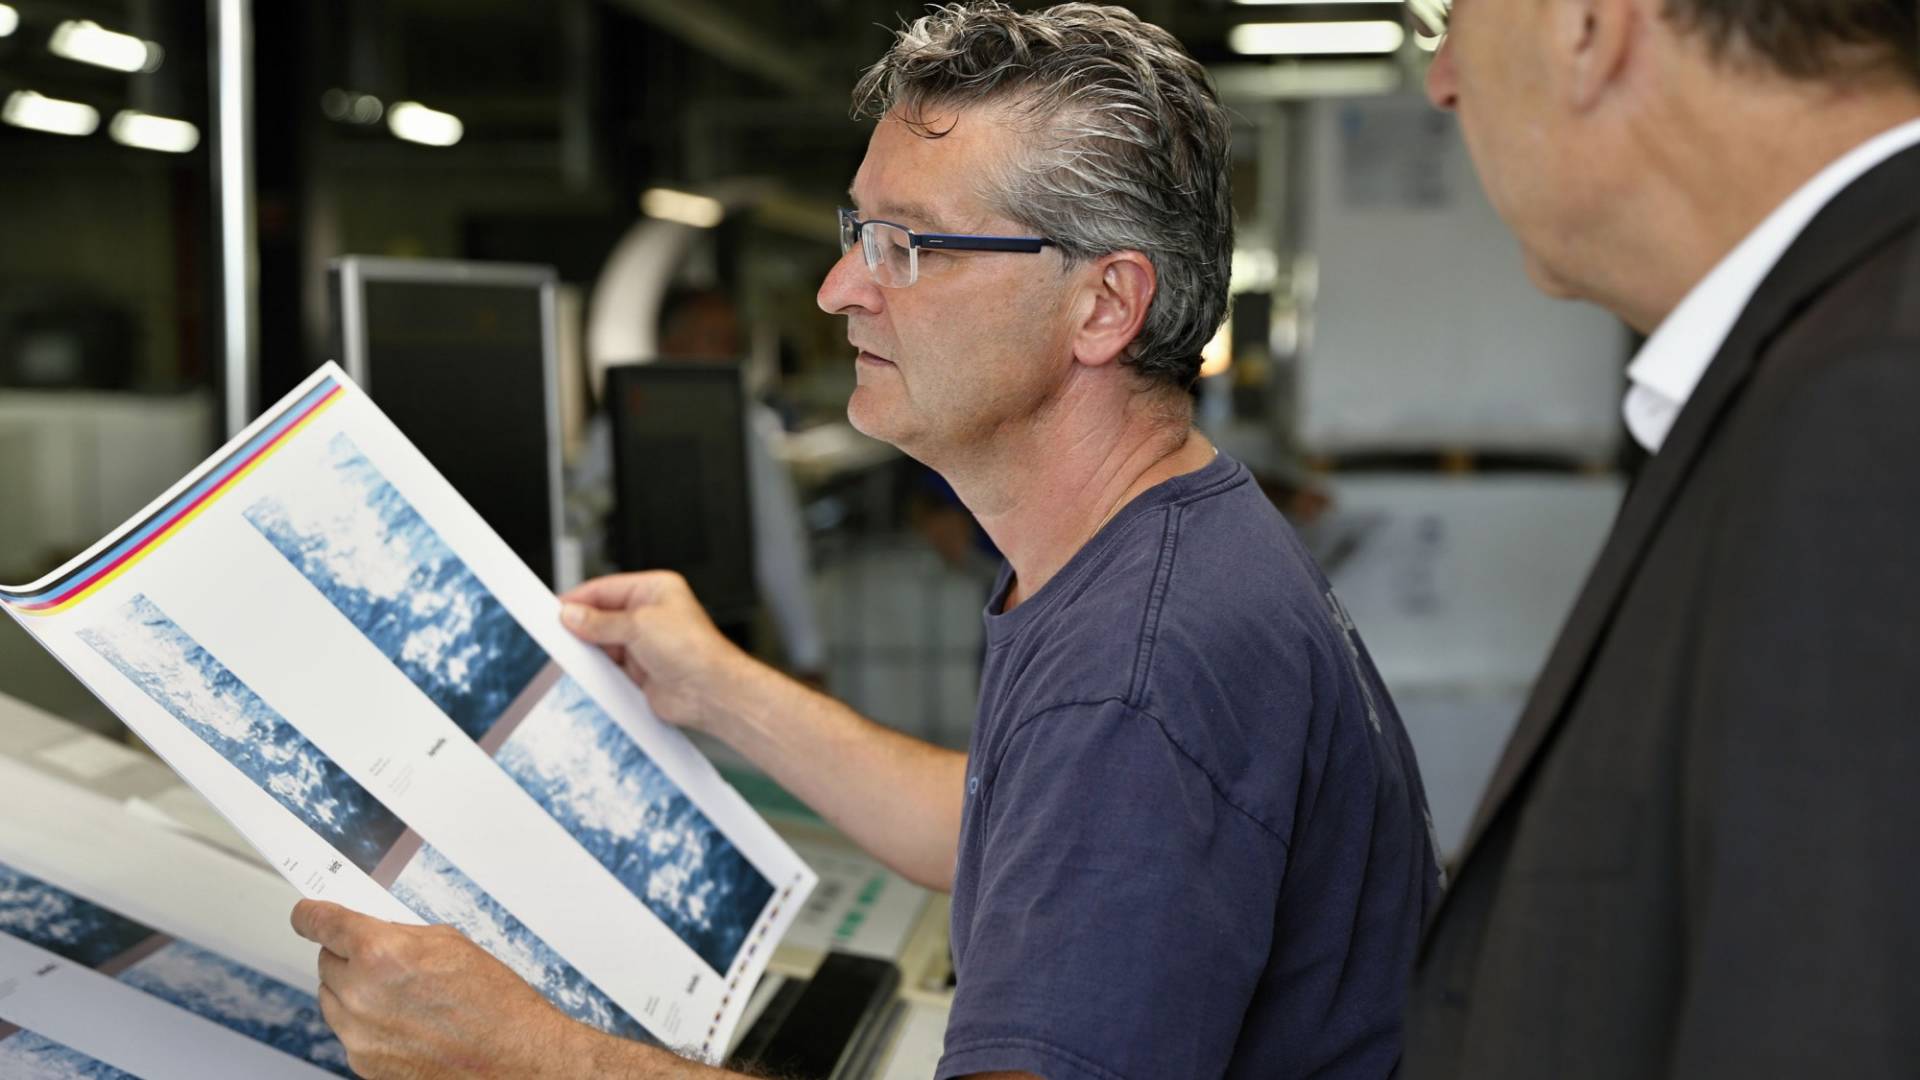 Un uomo ha in mano una stampa del grafico, mentre un altro lo osserva da dietro le spalle.